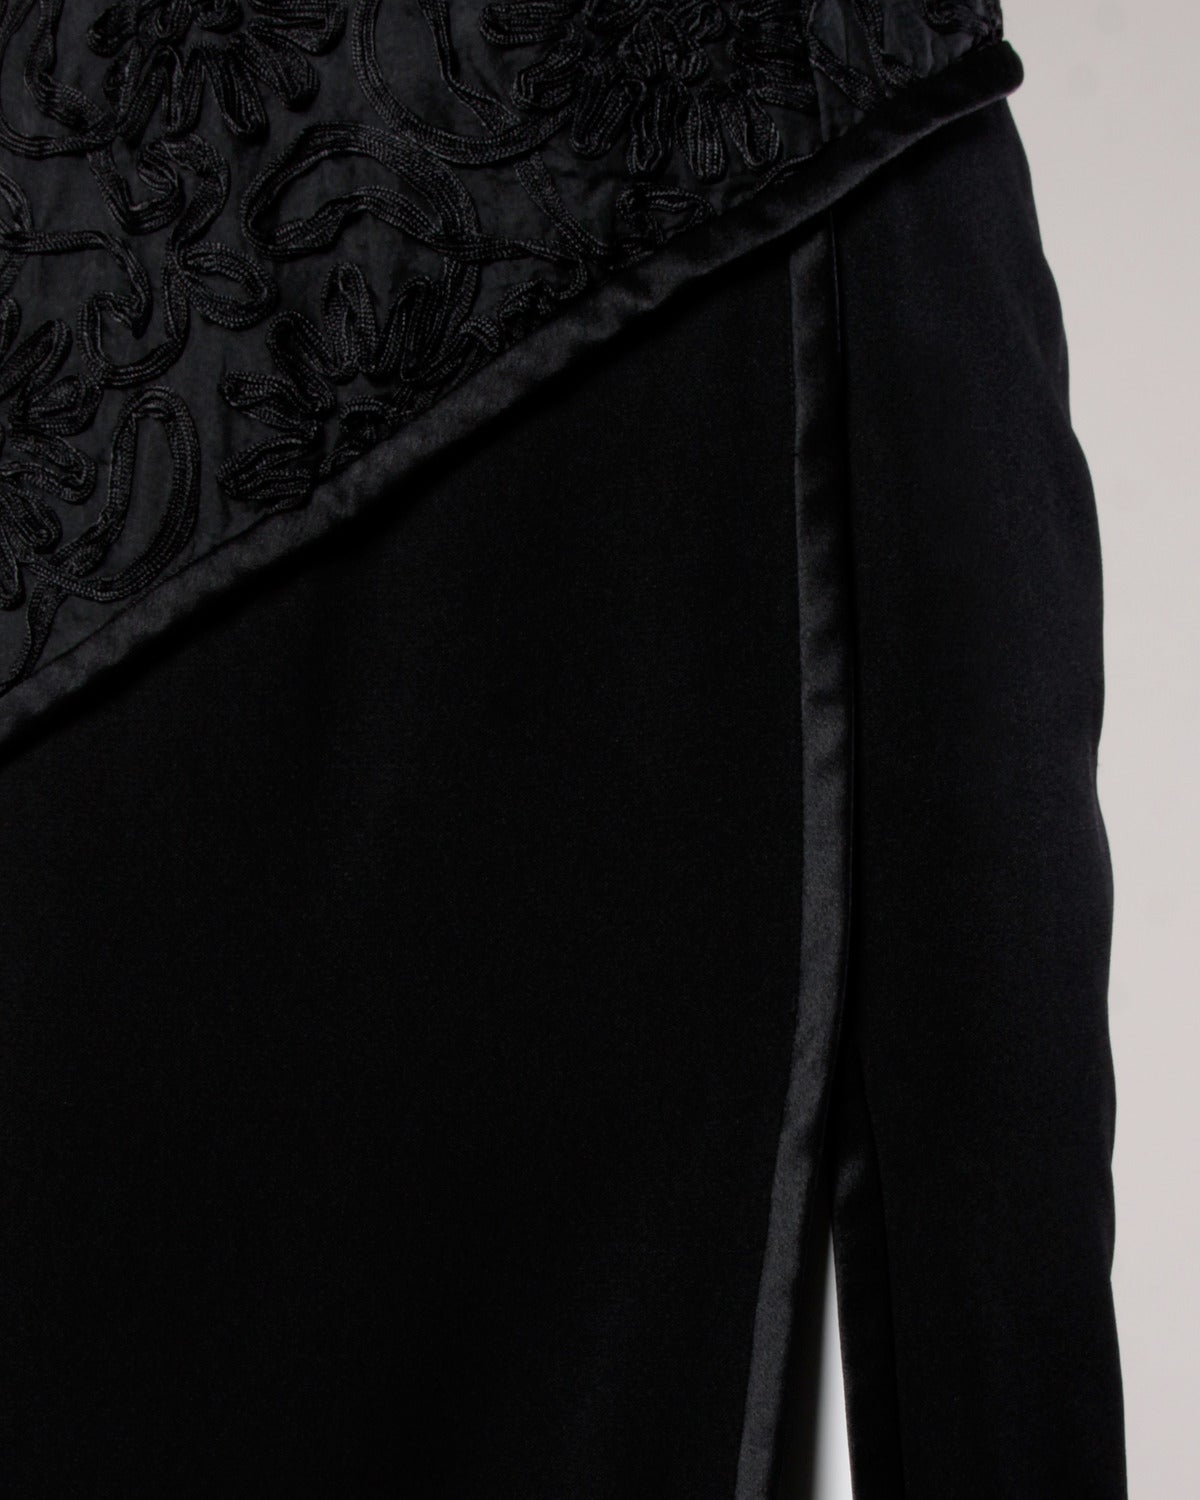 Bill Blass Vintage Black Soutache Evening Dress For Sale 2